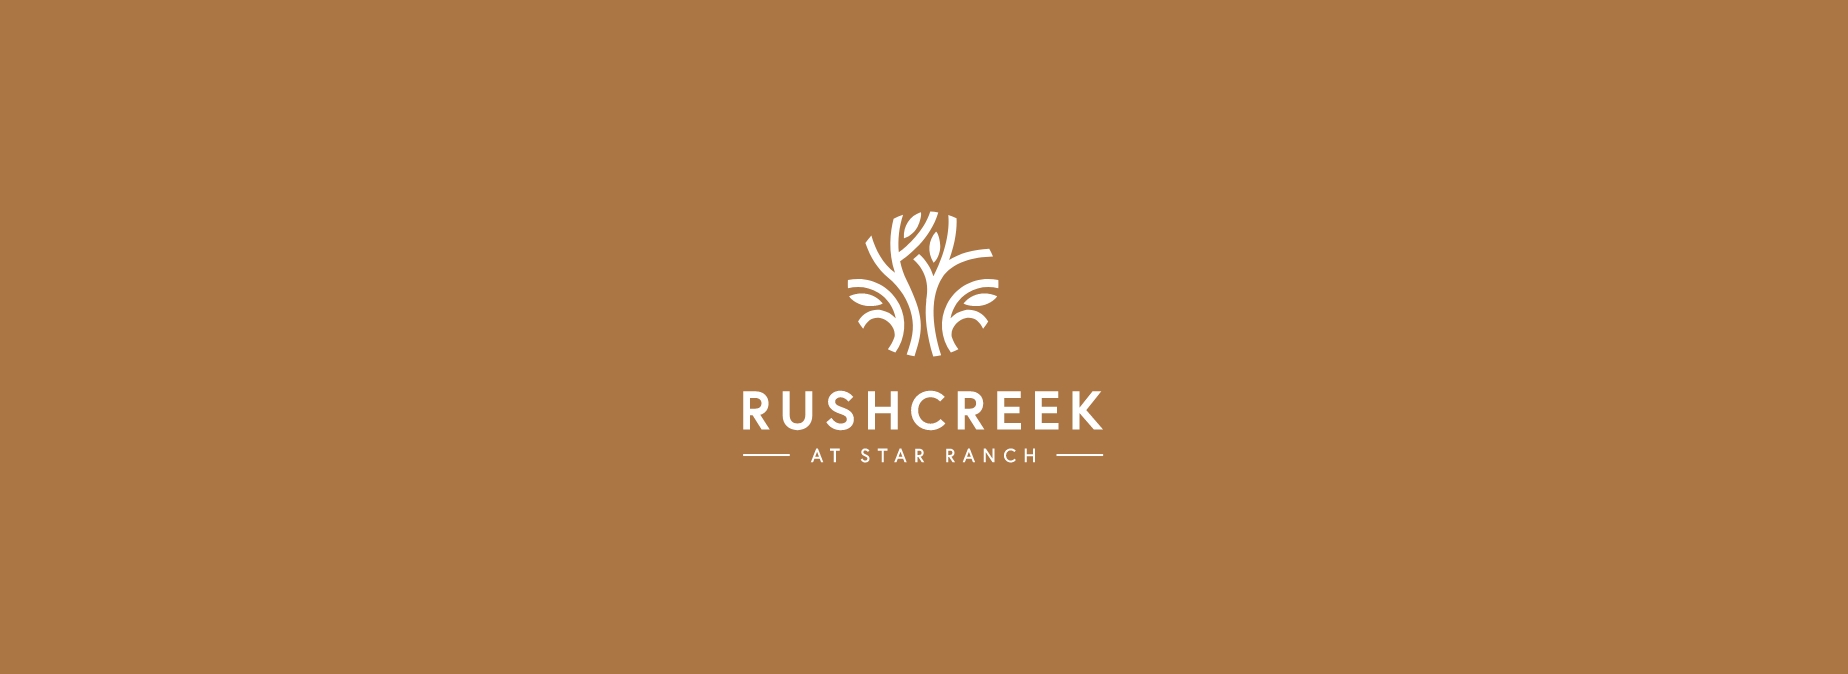 Rushcreek At Star Ranch img